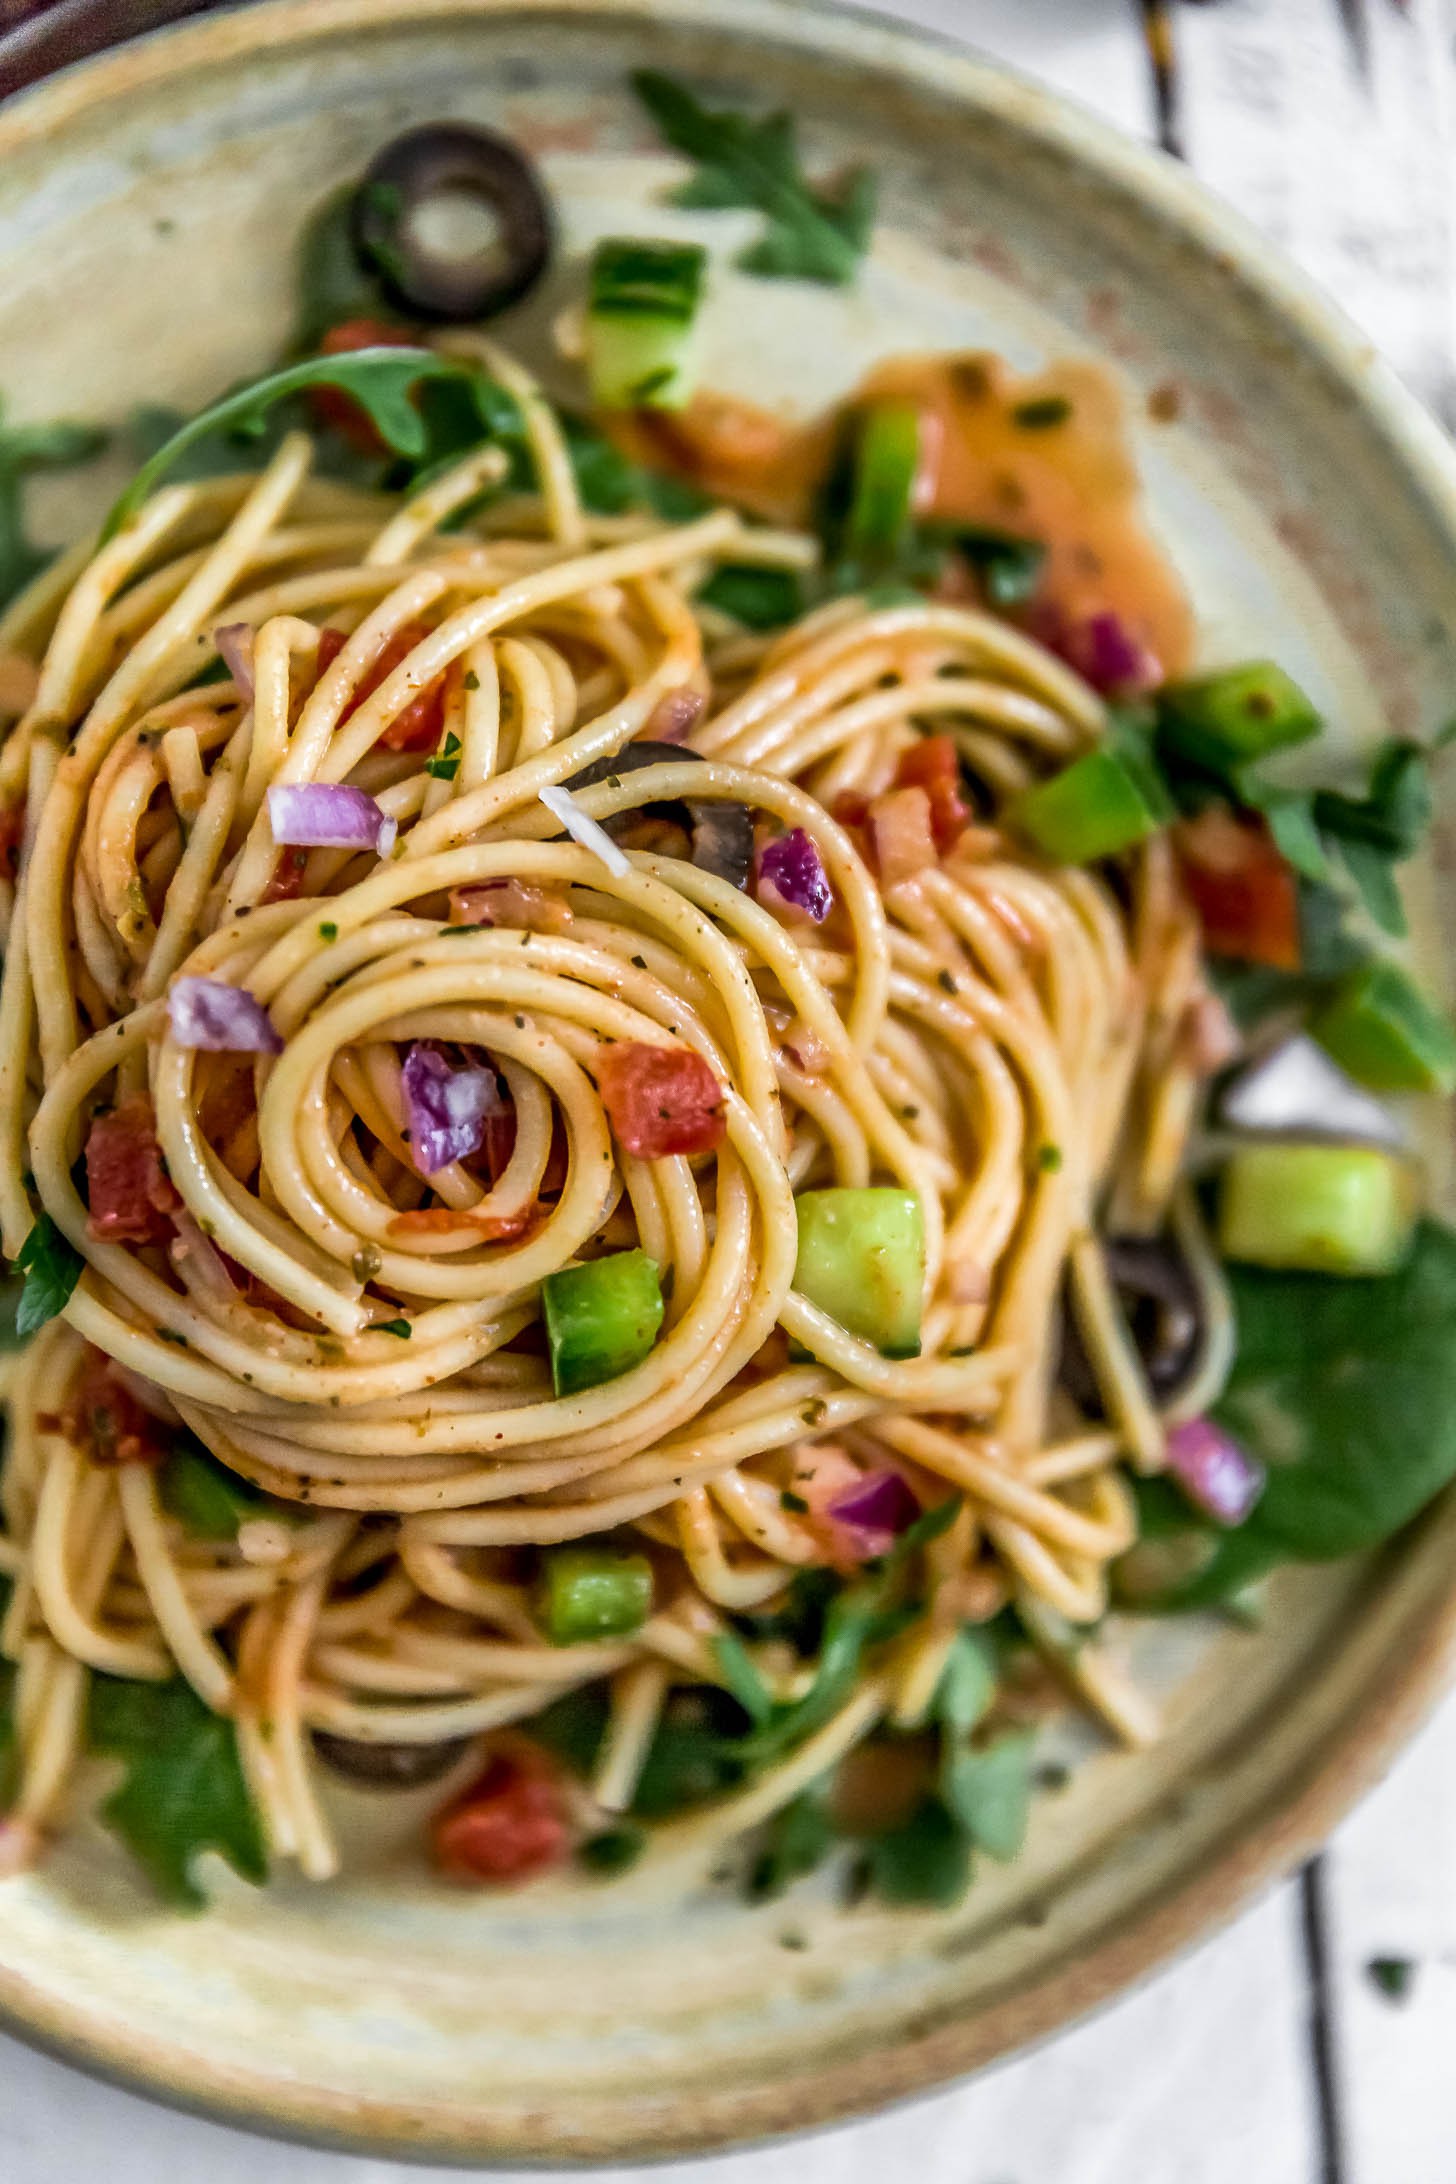 Healthy Italian Spaghetti Salad | Carol | Copy Me That